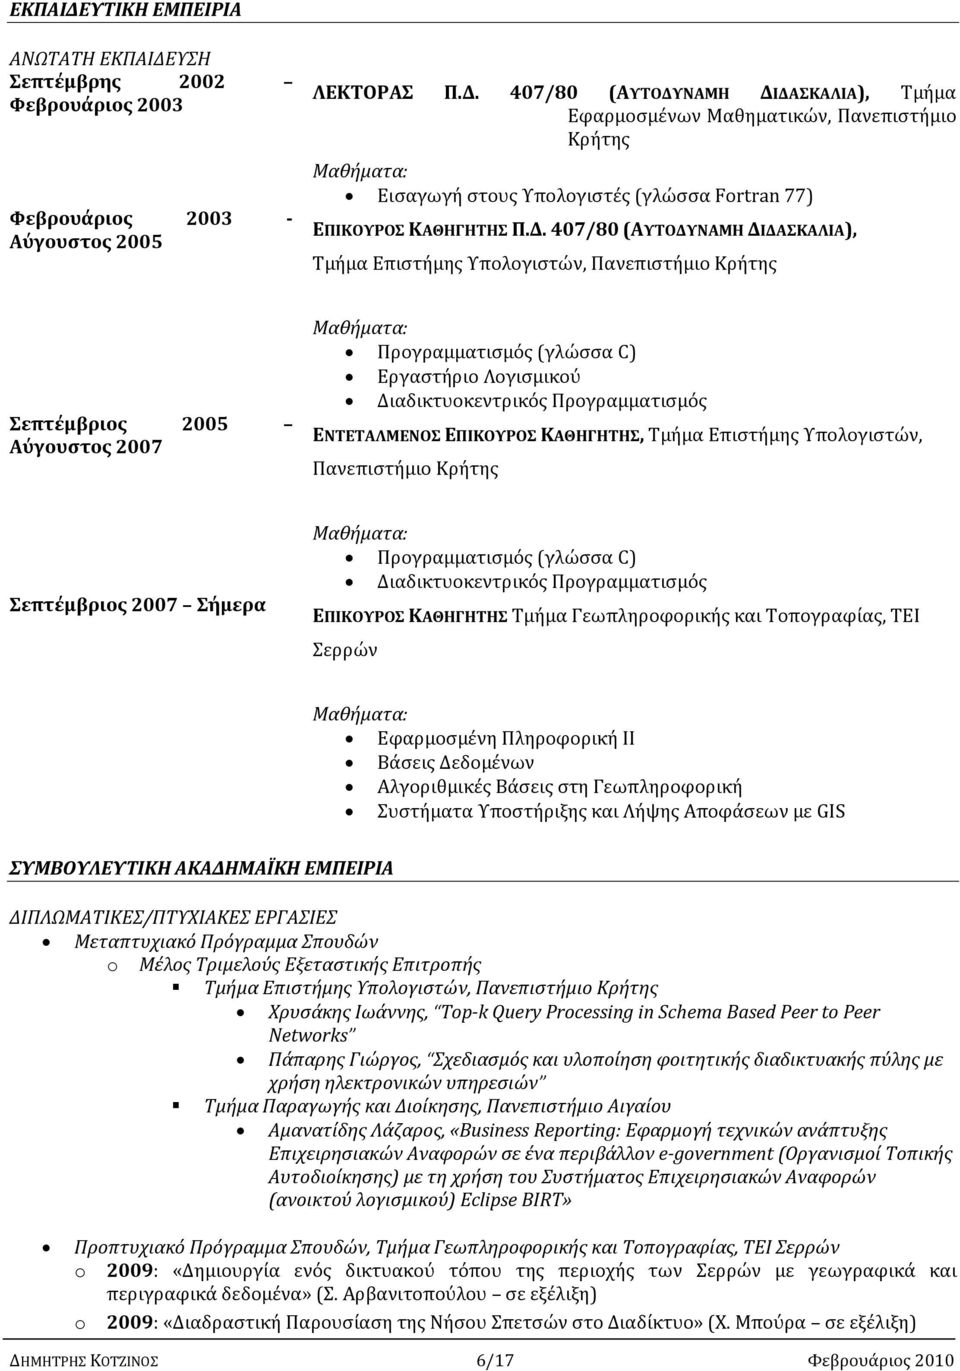 Προγραμματισμός ΕΝΤΕΤΑΛΜΕΝΟΣ ΕΠΙΚΟΥΡΟΣ ΚΑΘΗΓΗΤΗΣ, Τμήμα Επιστήμης Υπολογιστών, Πανεπιστήμιο Κρήτης Σεπτέμβριος 2007 Σήμερα Μαθήματα: Προγραμματισμός (γλώσσα C) Διαδικτυοκεντρικός Προγραμματισμός